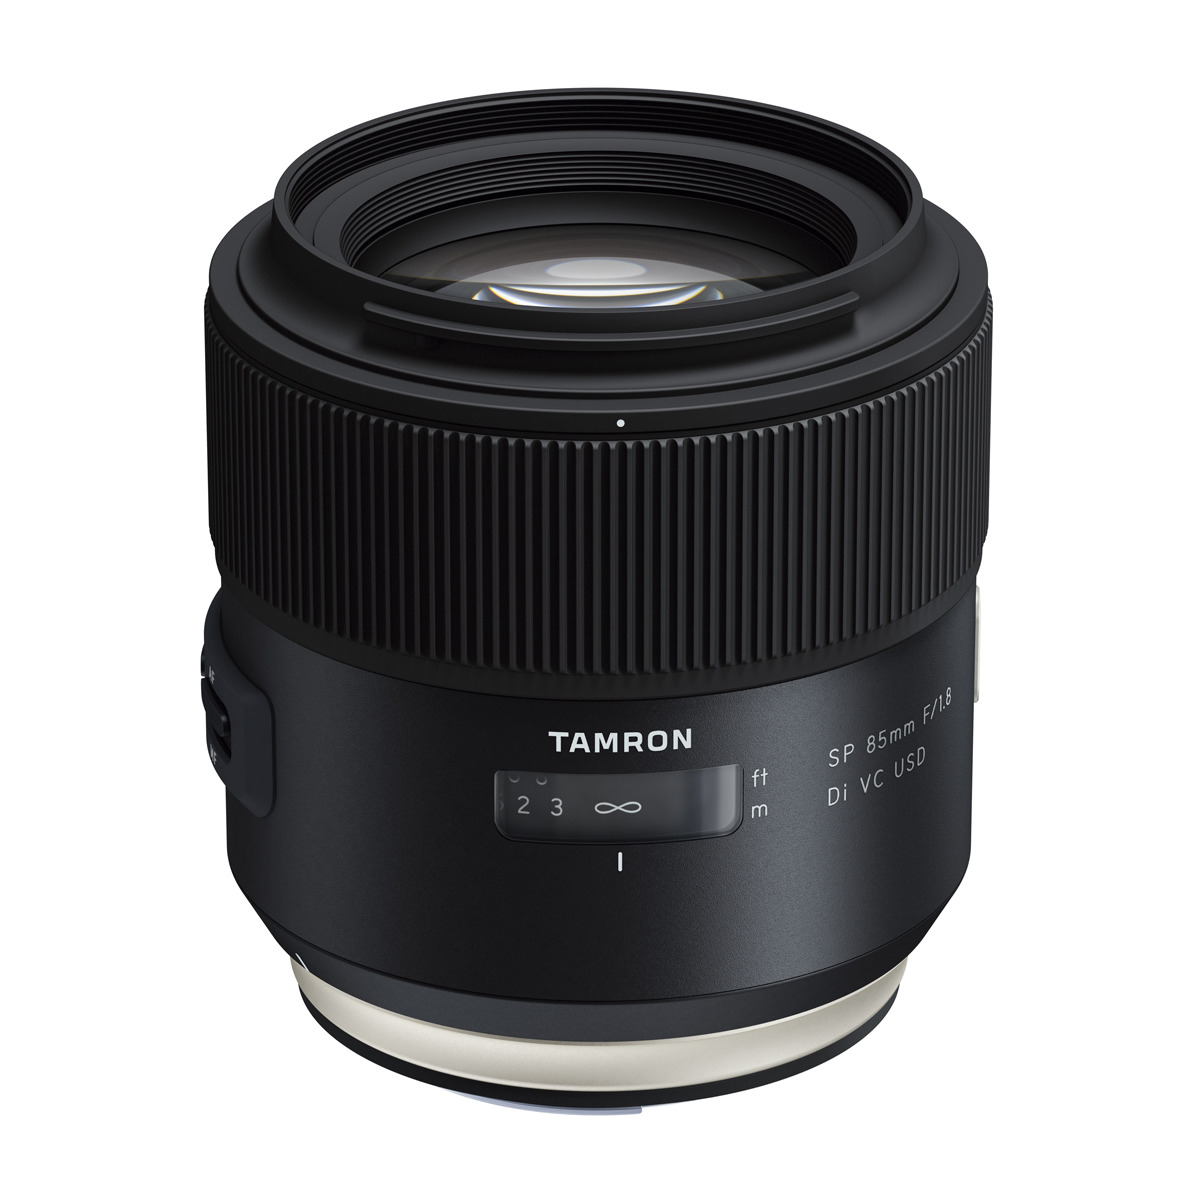 TAMRON F016E SP (Objektiv DI für 85MM mm 85 - Canon EF-S-Mount, 85 Di, VC f/1.8 mm SP F/1.8 USD CANON Schwarz) USD, VC